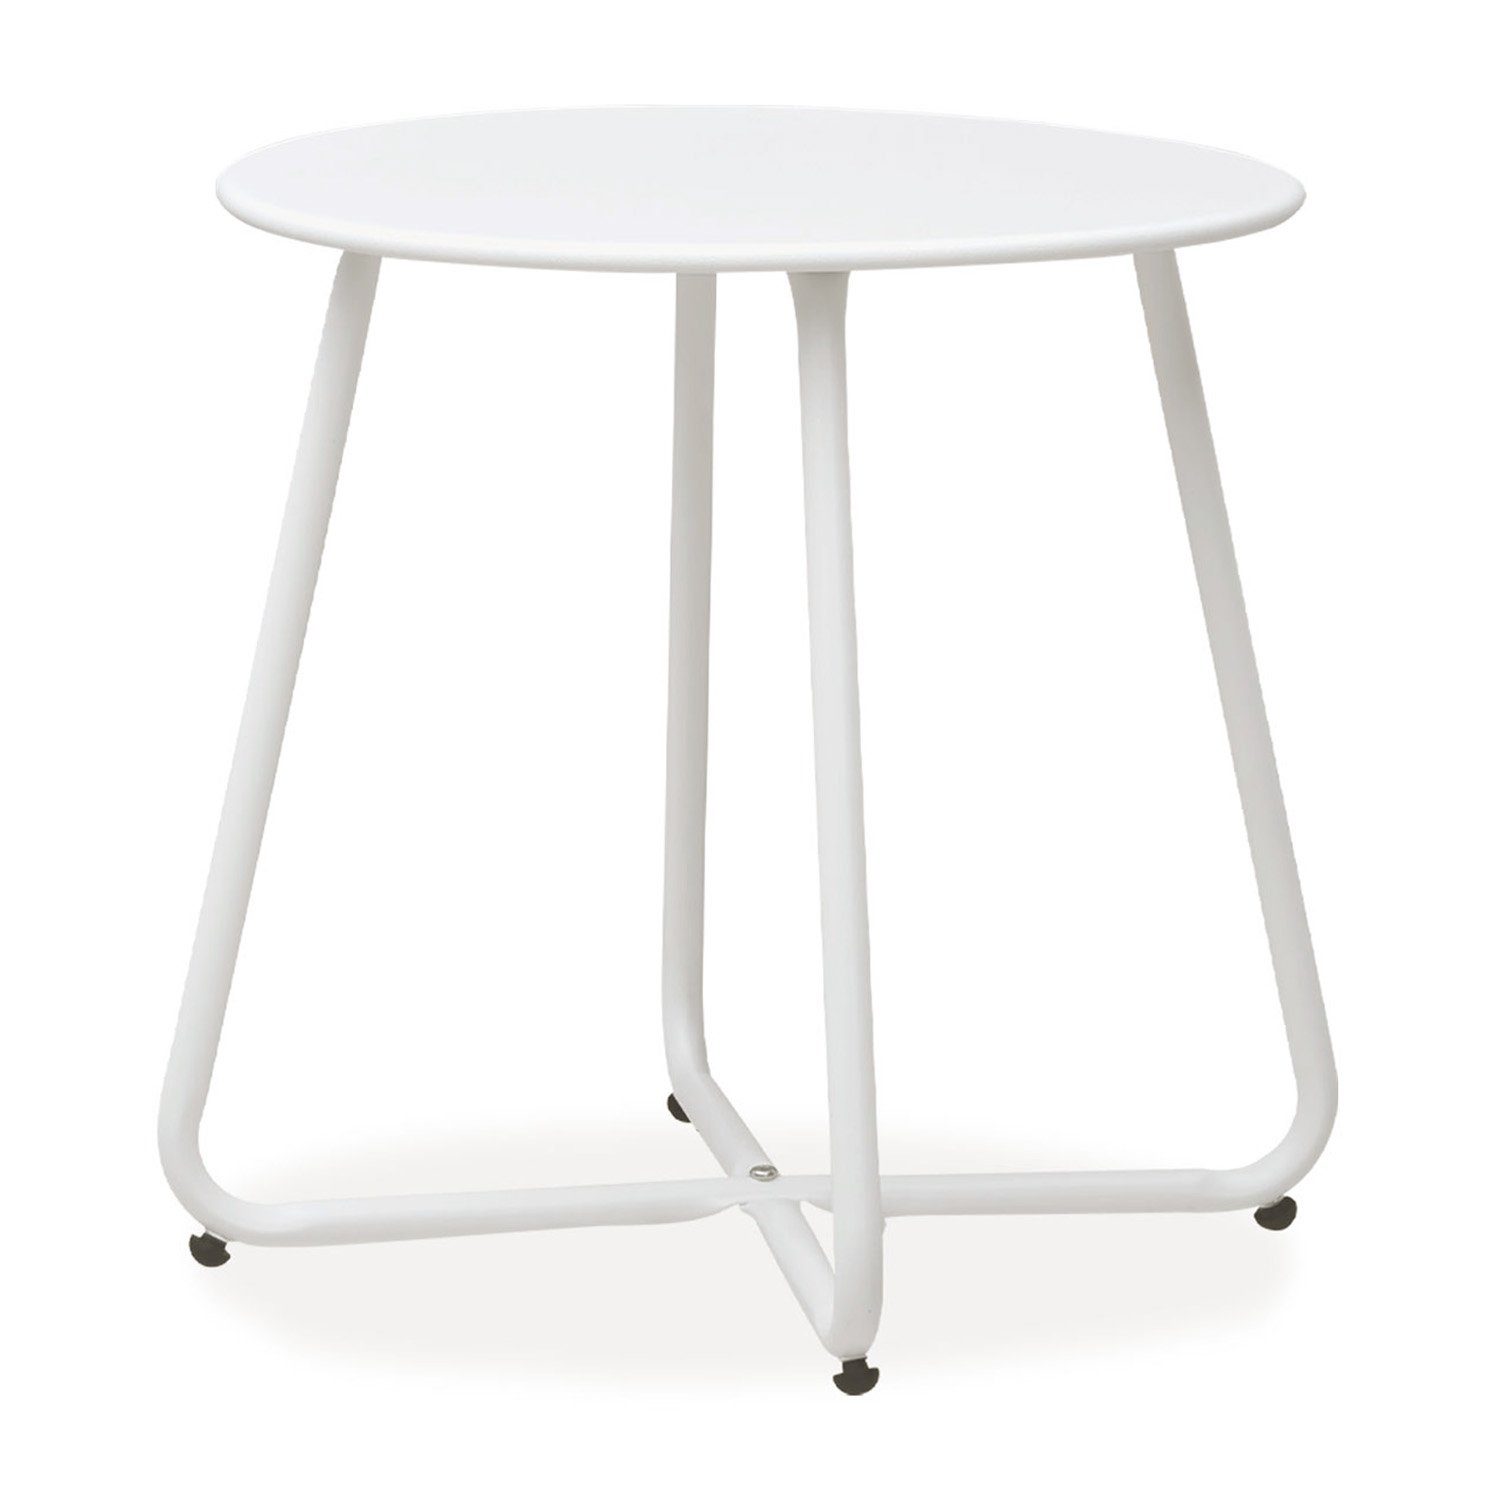 Homestyle4u Beistelltisch Gartentisch Rund Metall Balkontisch Tisch Kaffeetisch 45cm Durchmesser, Weiß